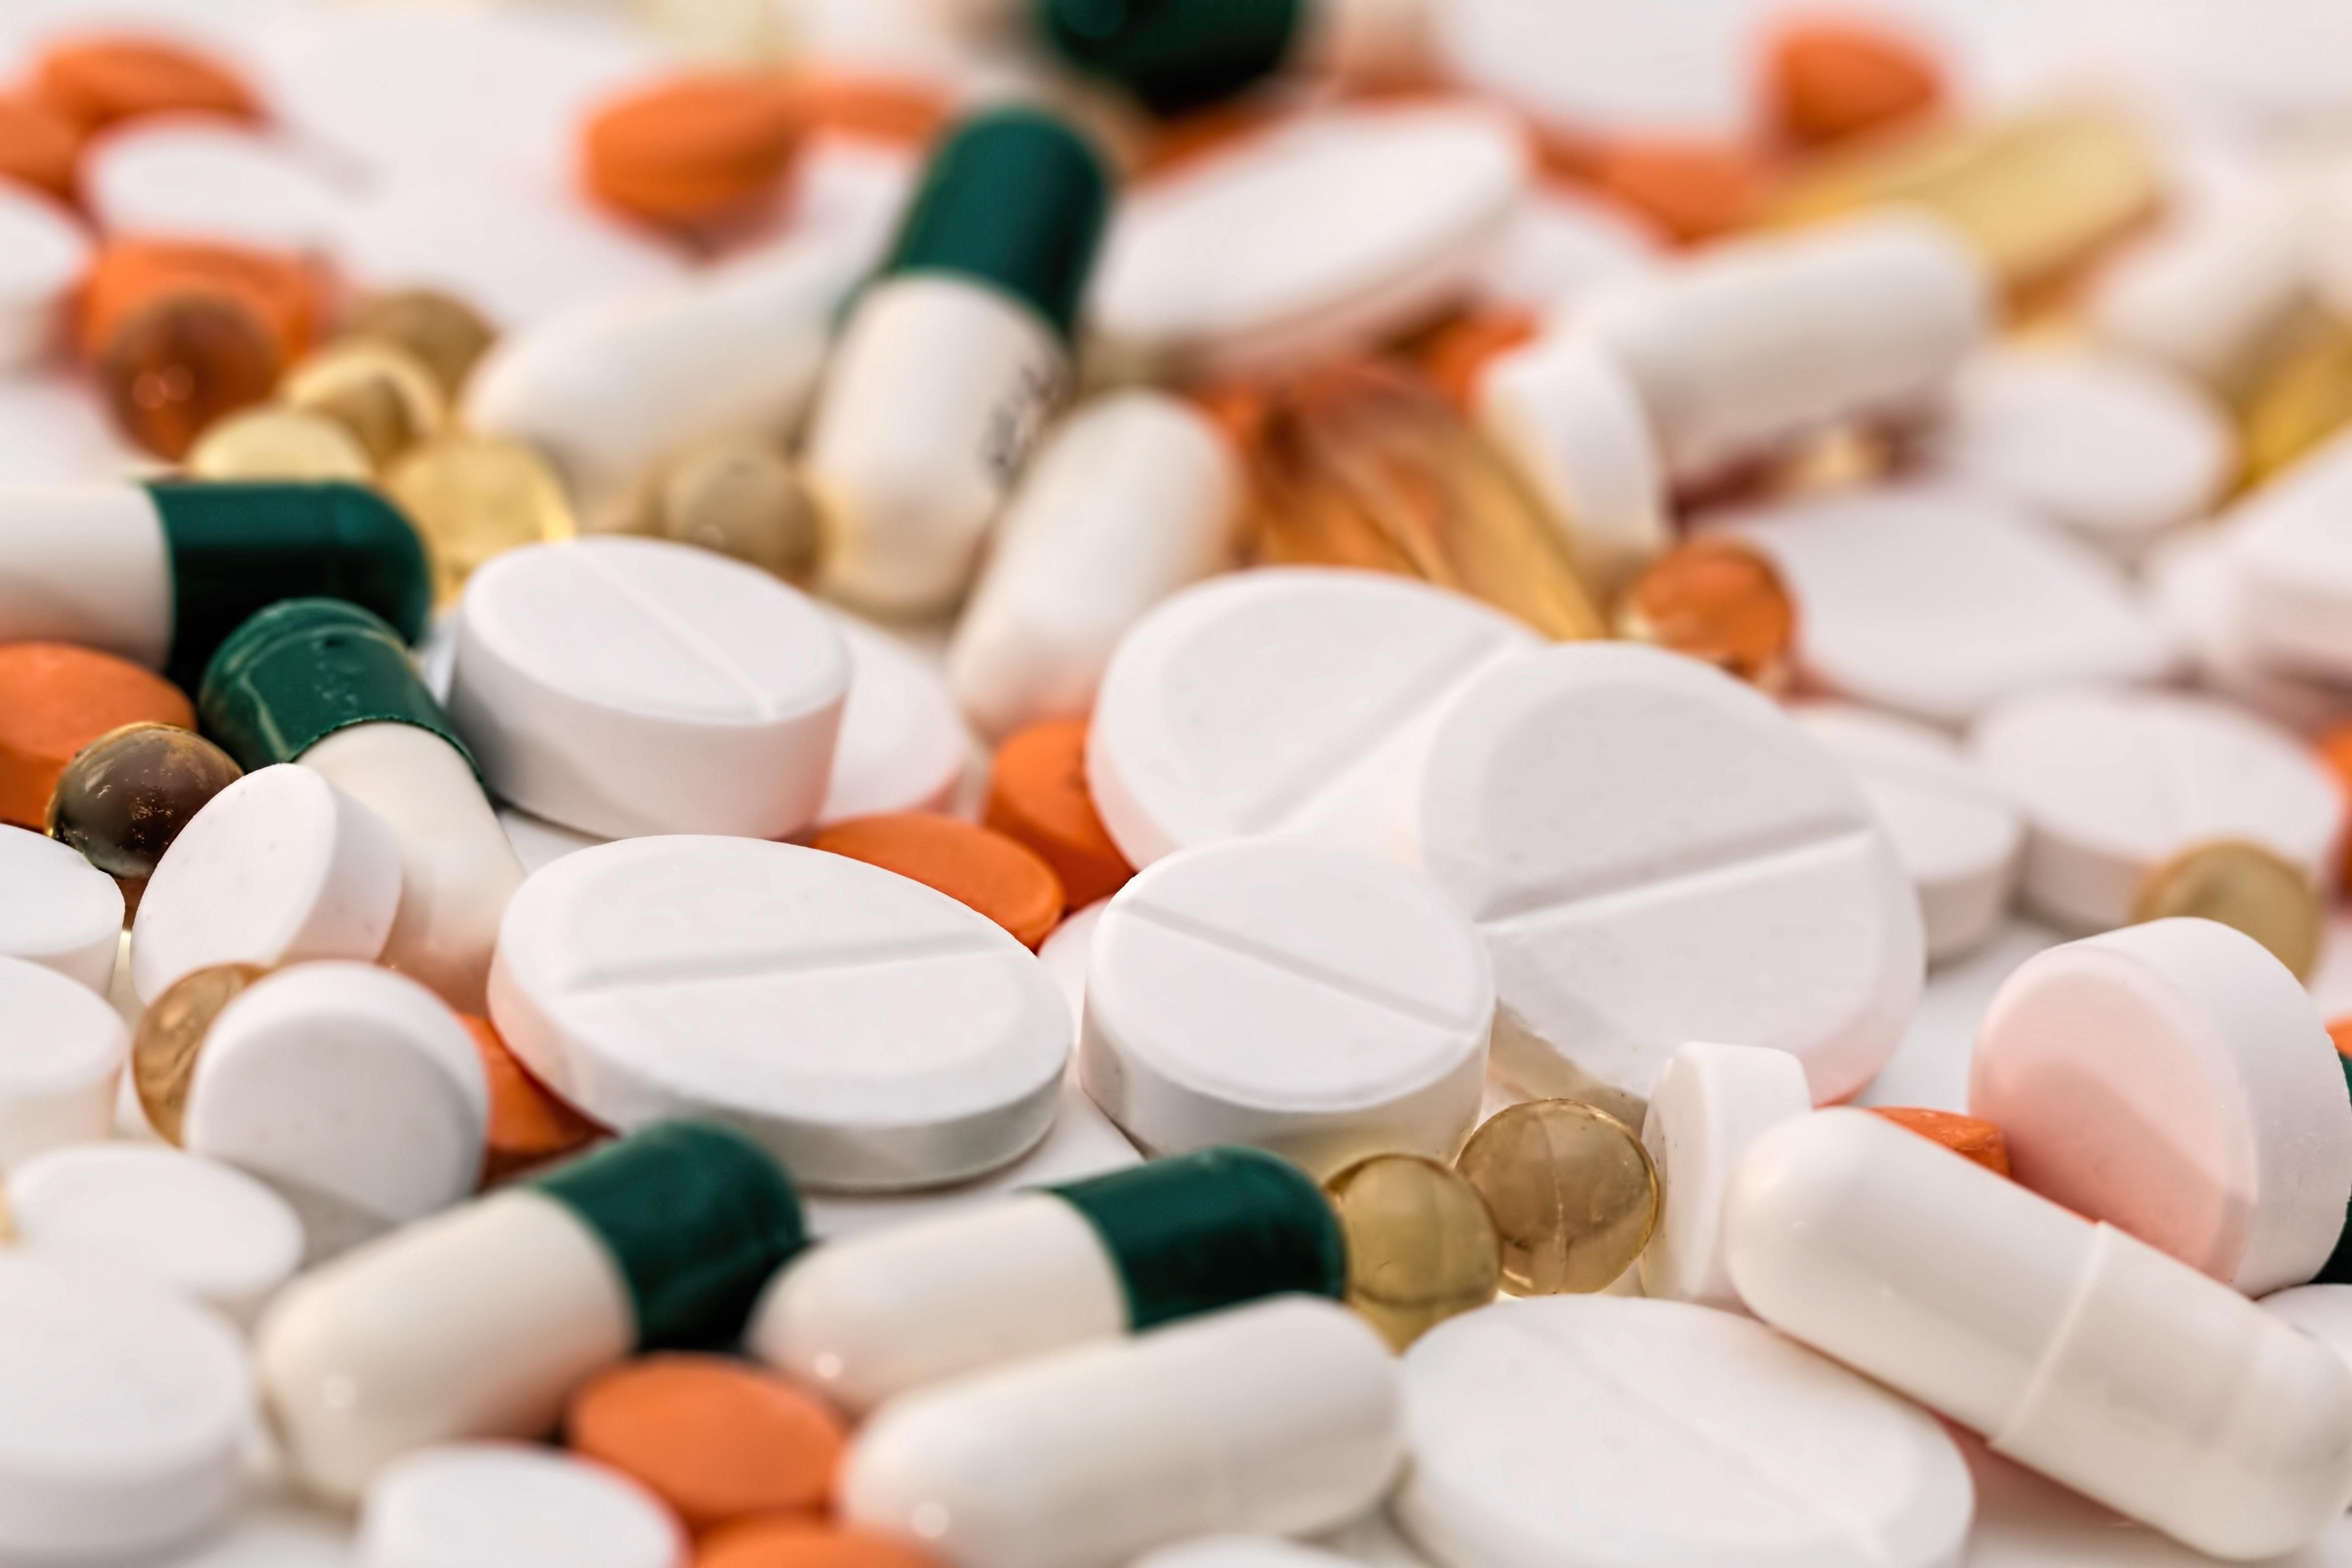 МОЗ: Три з чотирьох упаковок ліків, які купують українці, – вітчизняного виробництва